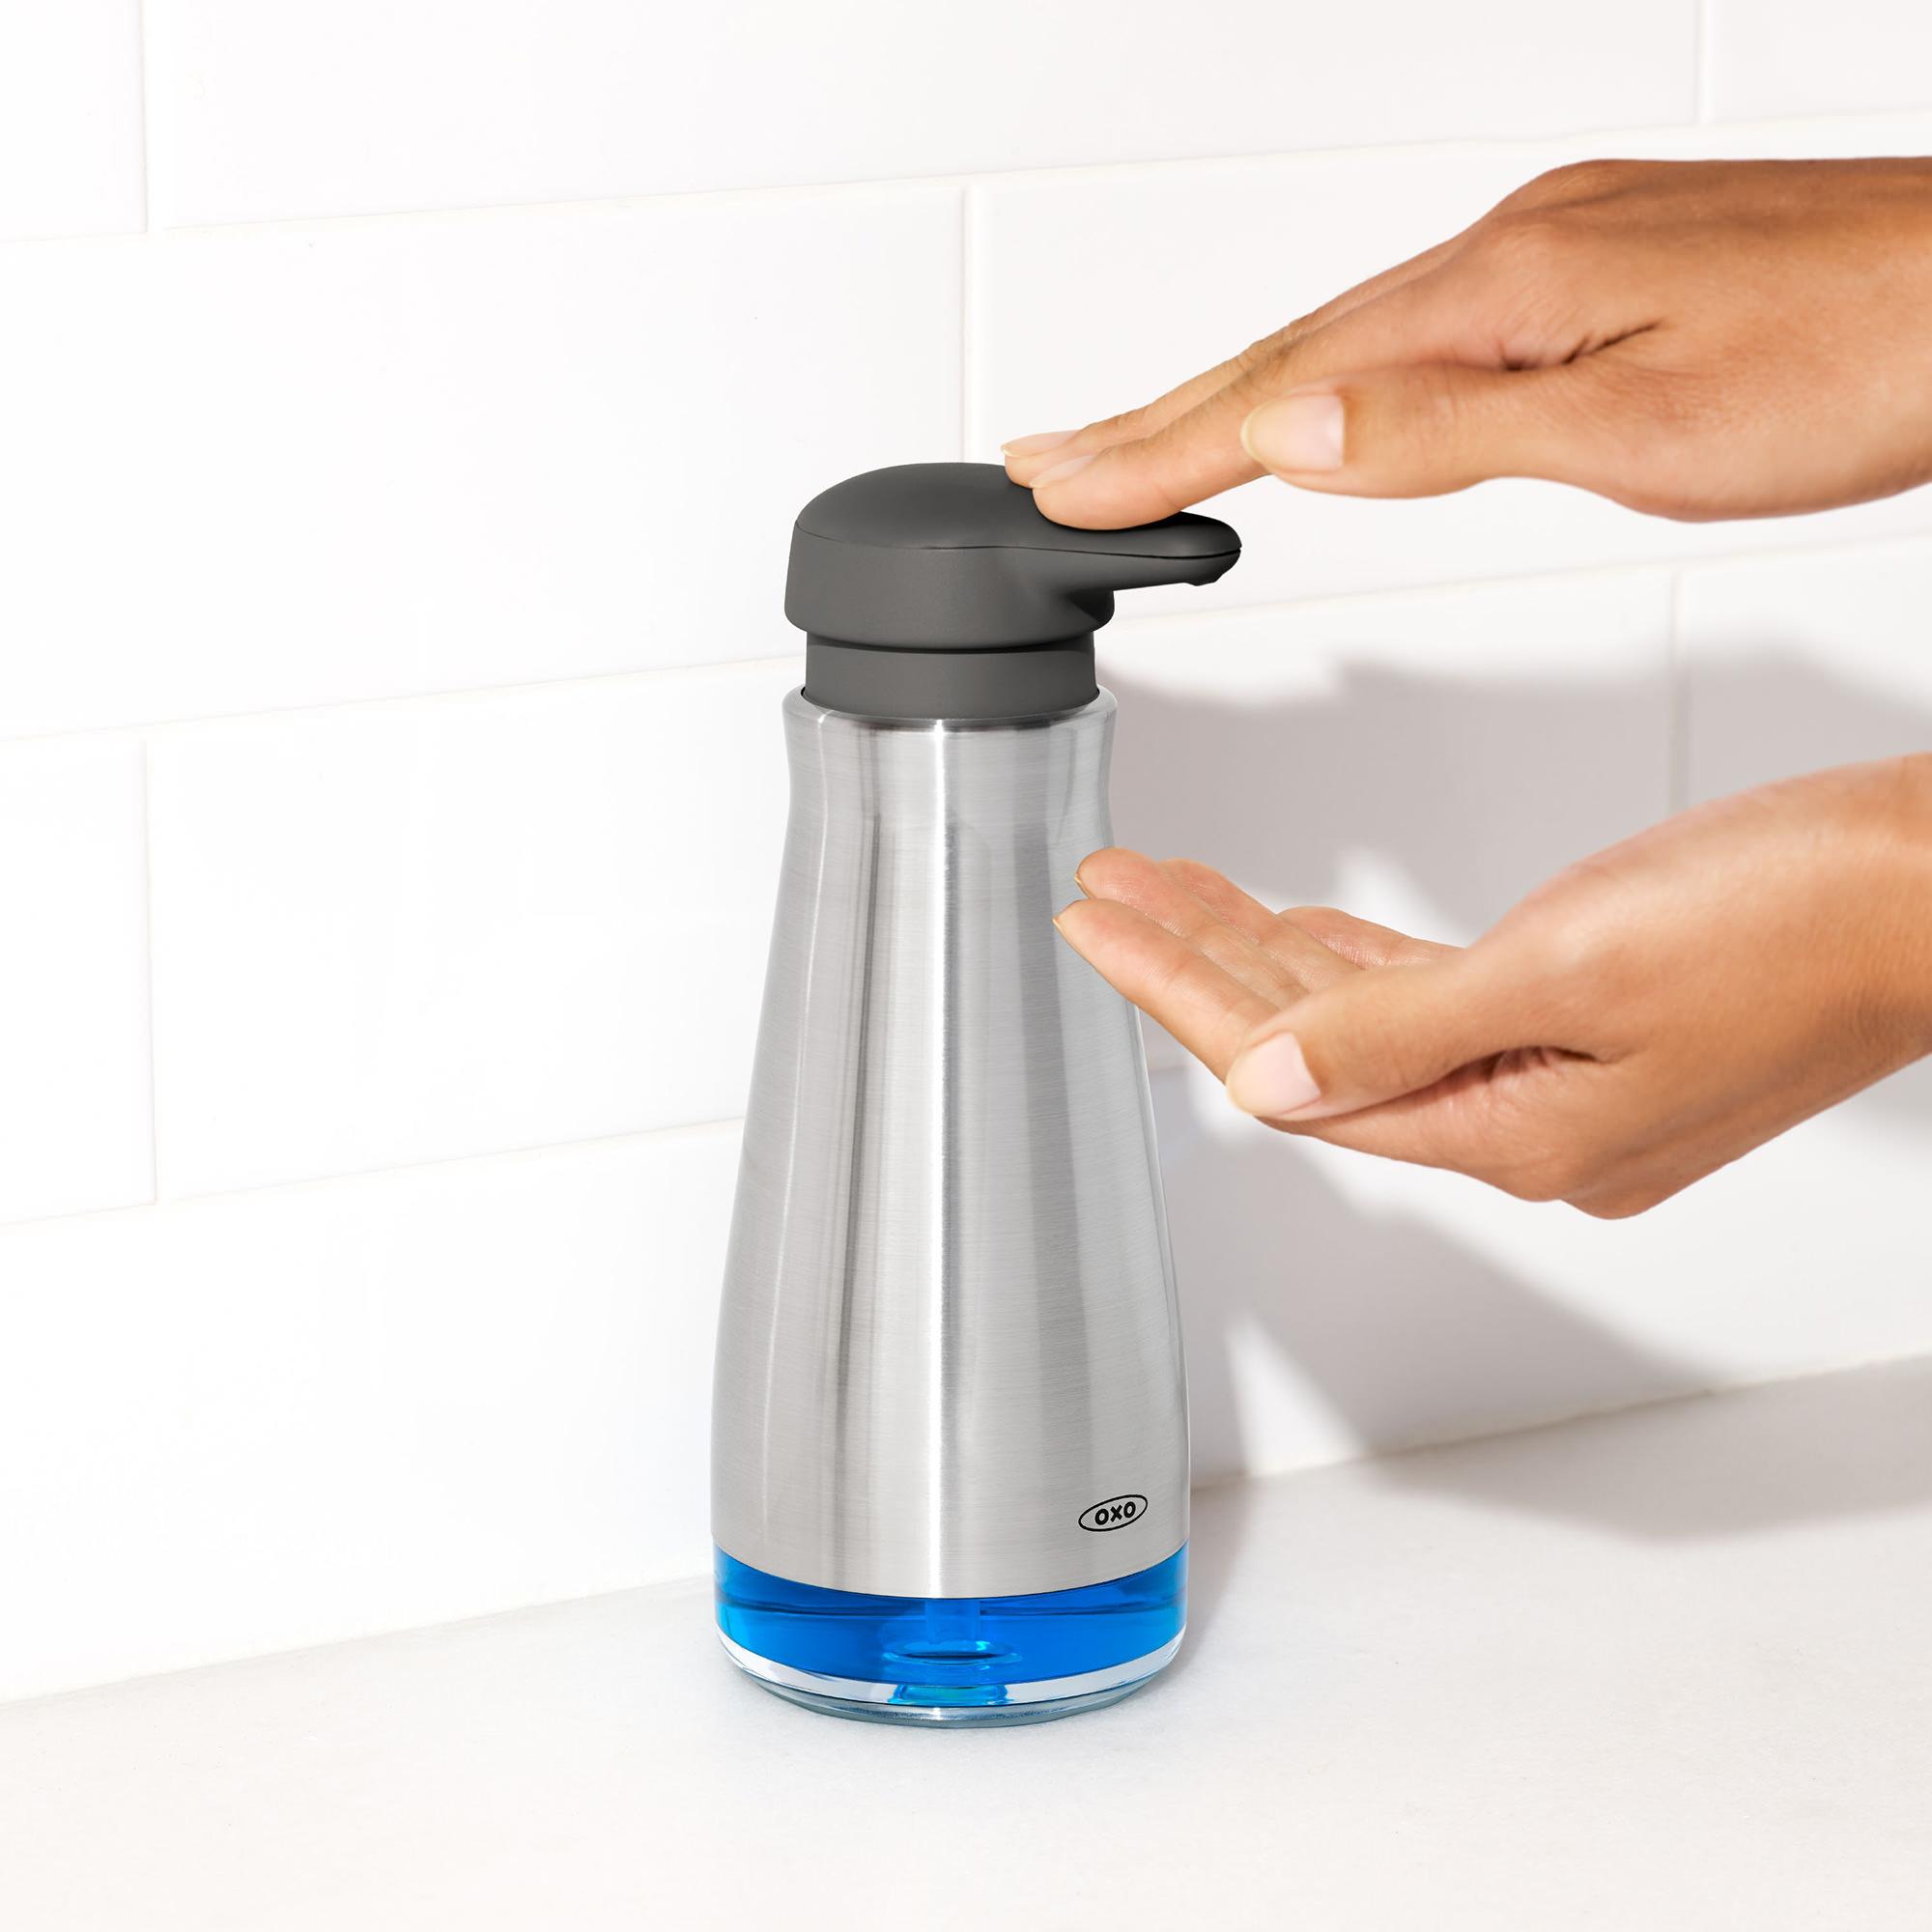 OXO Good Grips Soap Dispenser 7.3L Image 5